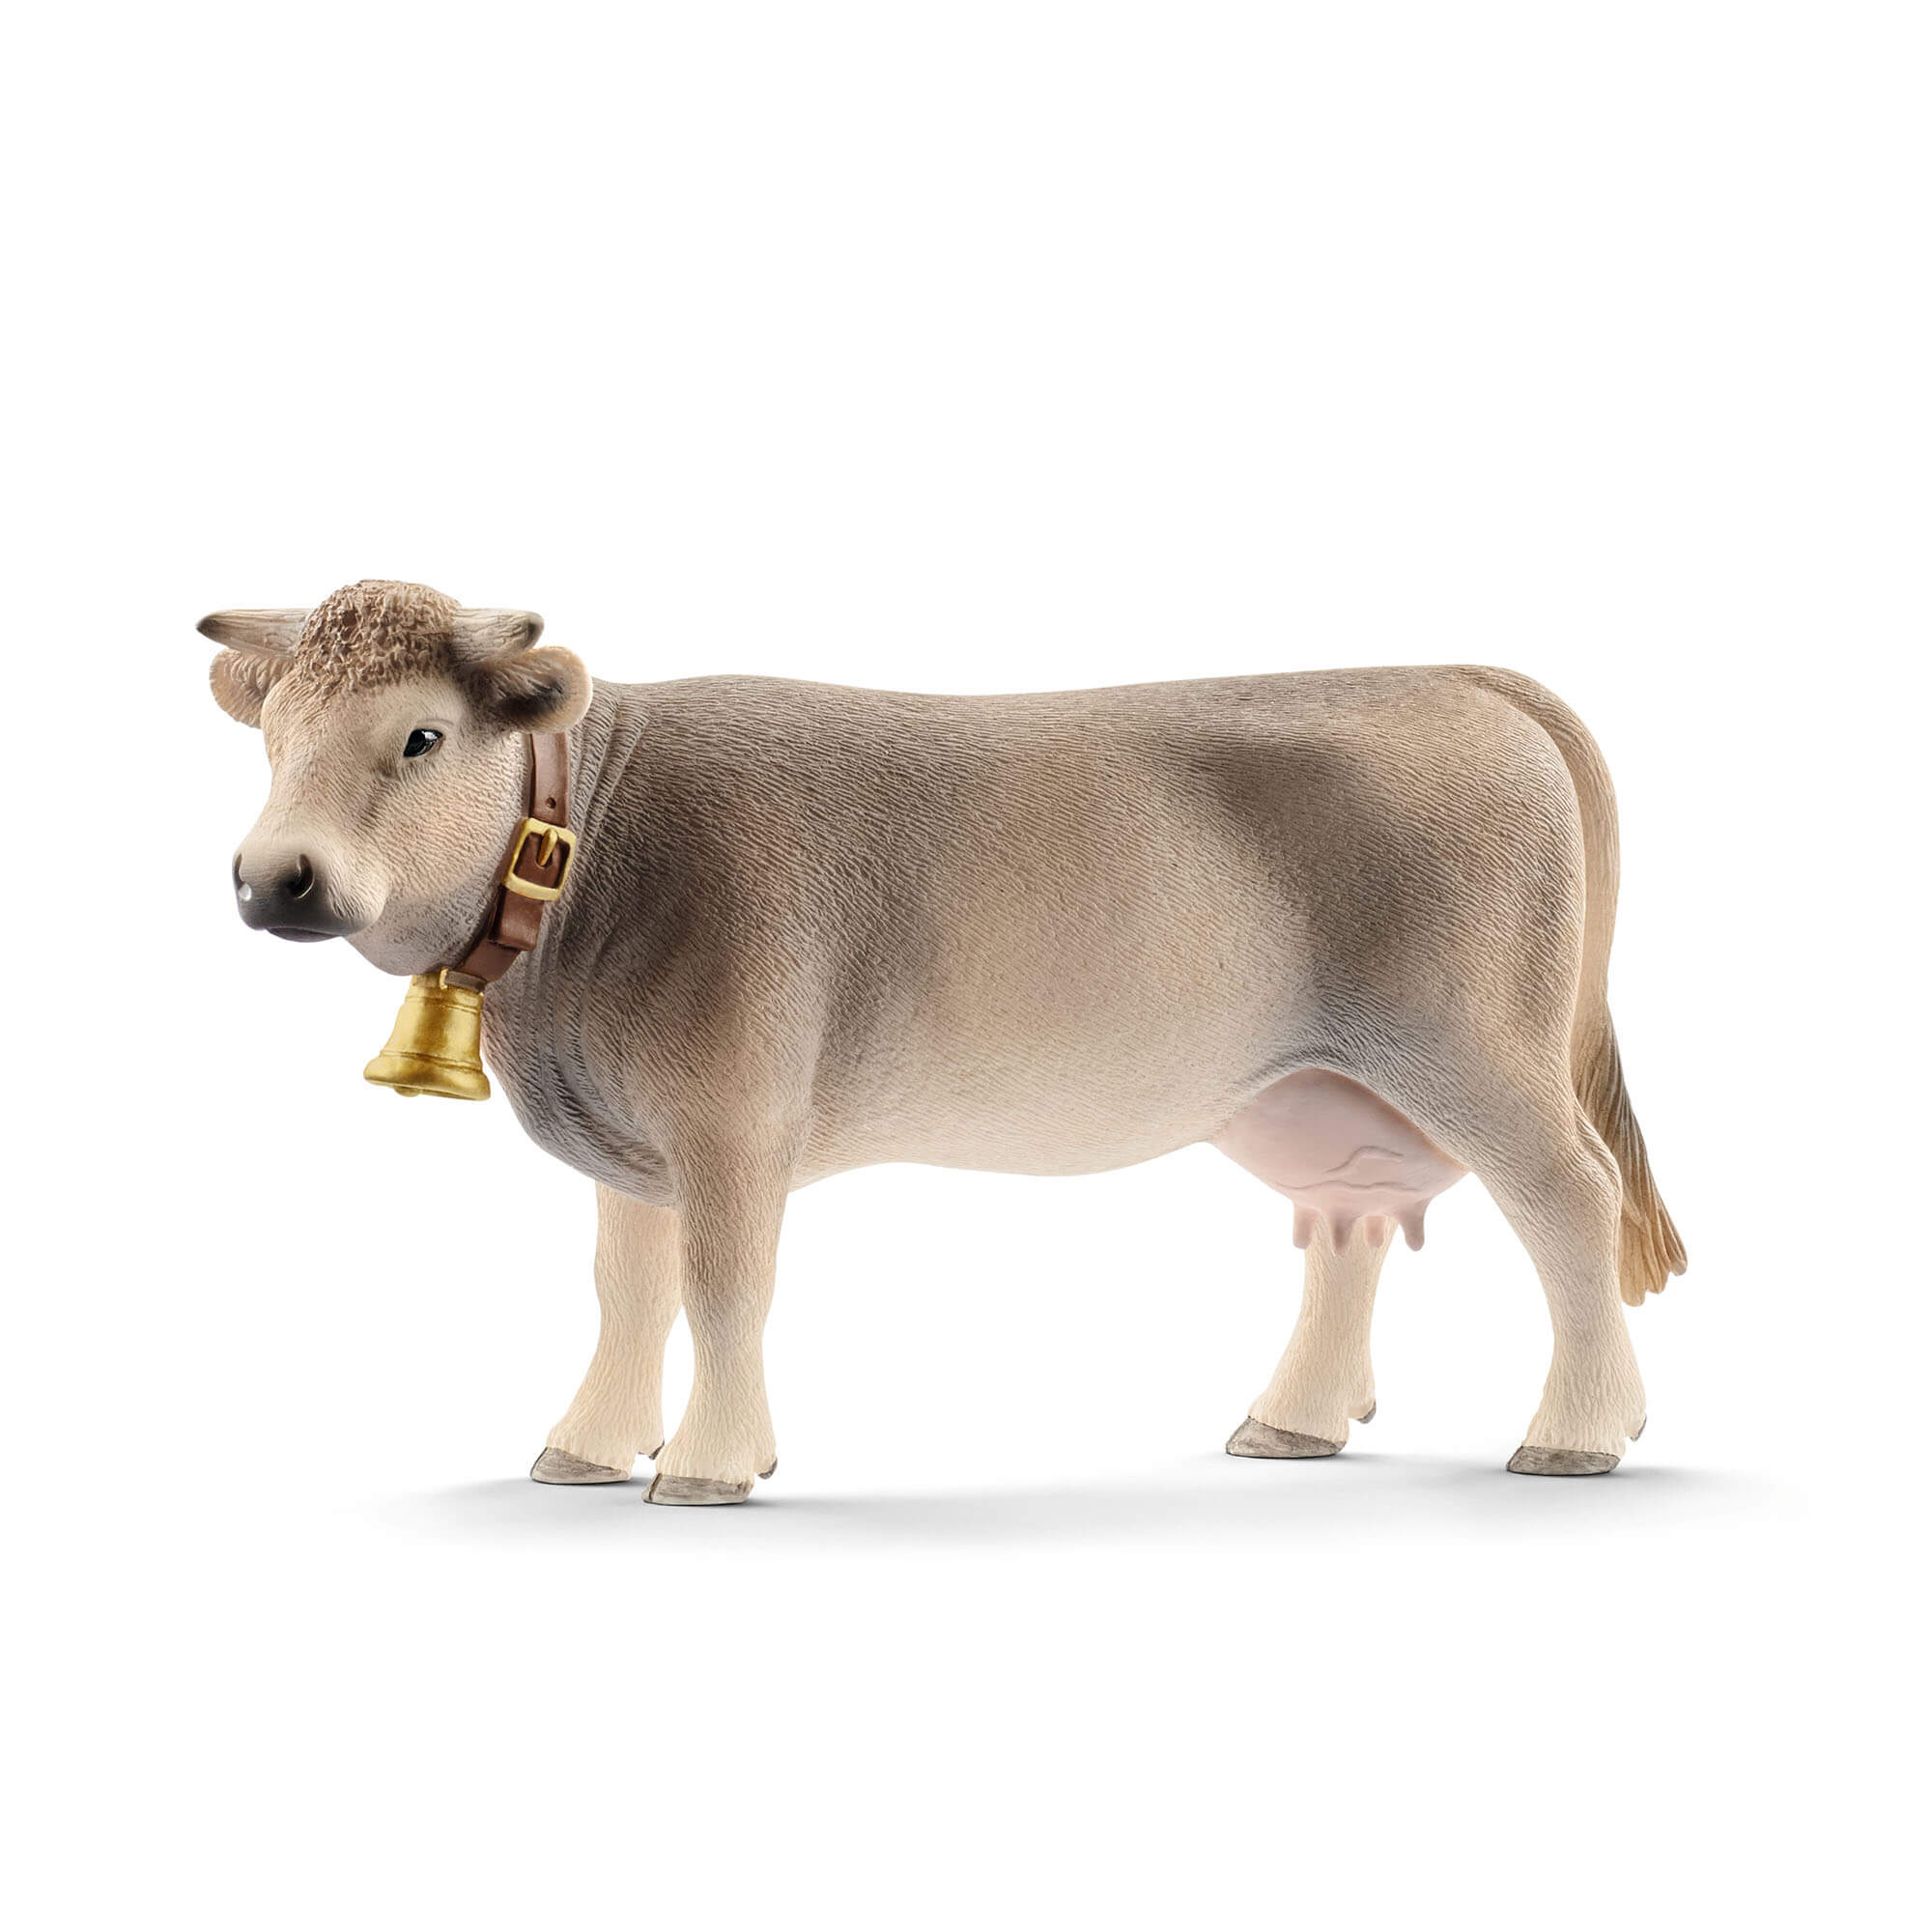 Schleich Farm World Braunvieh Cow Animal Figure